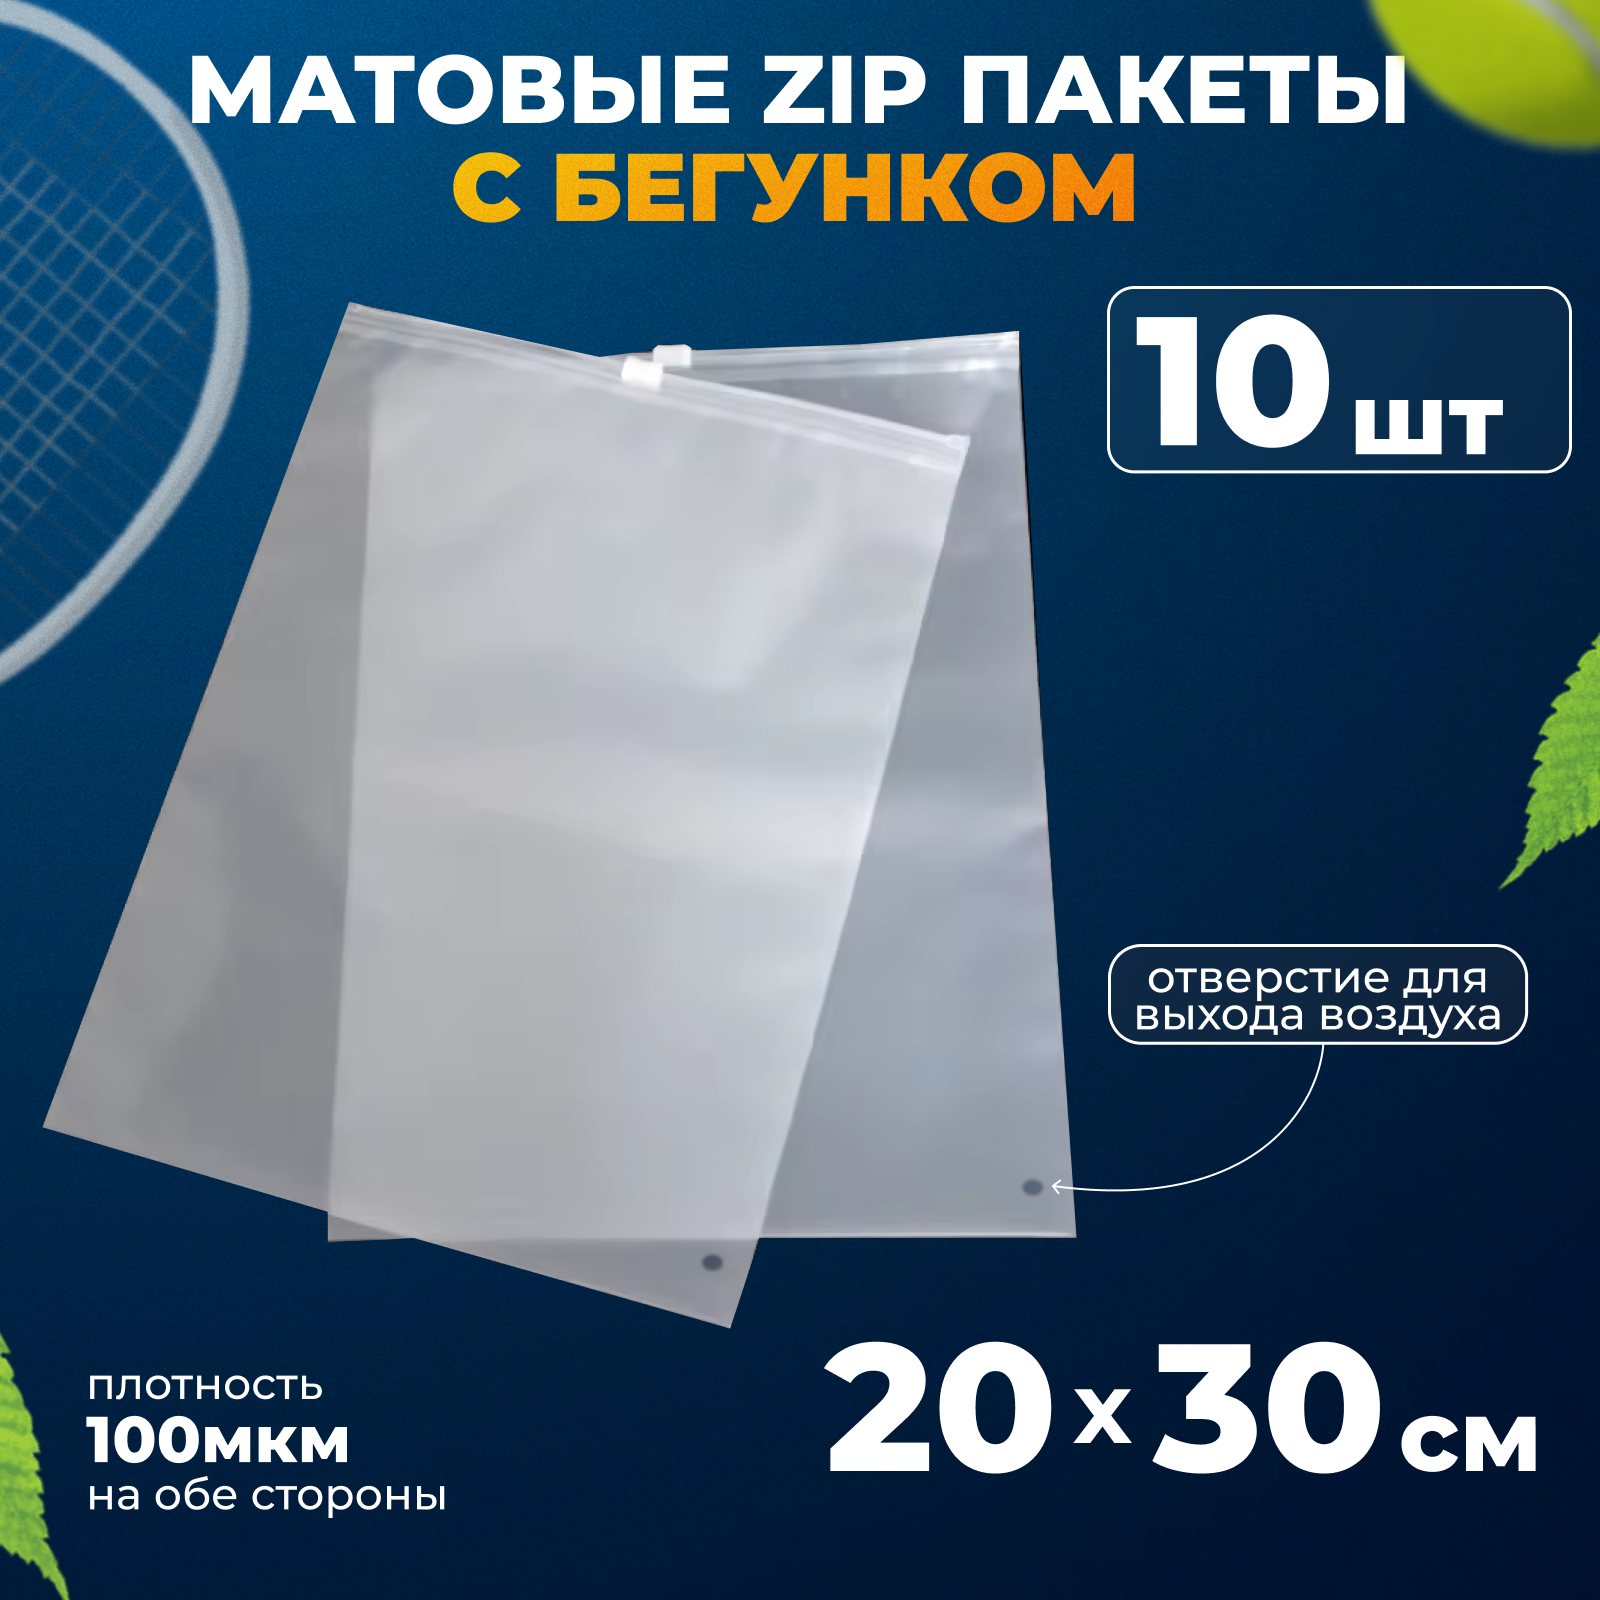 Матовые зип пакеты с бегунком 20х30 см, 10шт